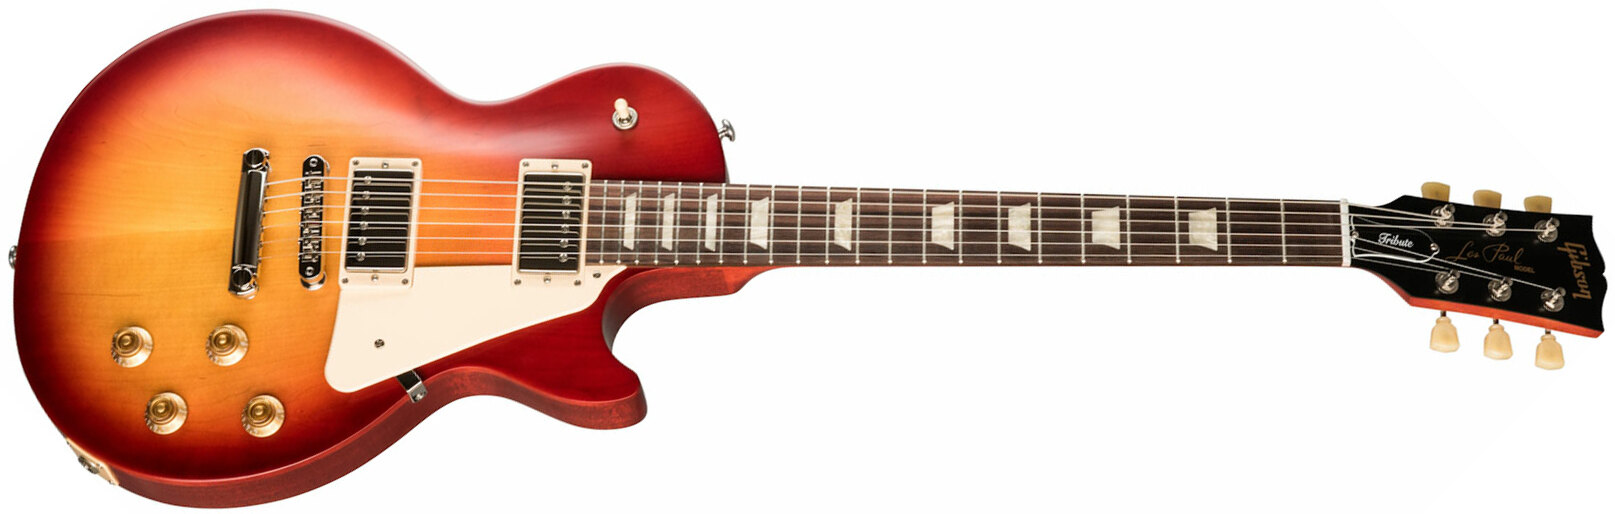 Gibson Les Paul Tribute Modern 2h Ht Rw - Satin Cherry Sunburst - Guitarra eléctrica de corte único. - Main picture